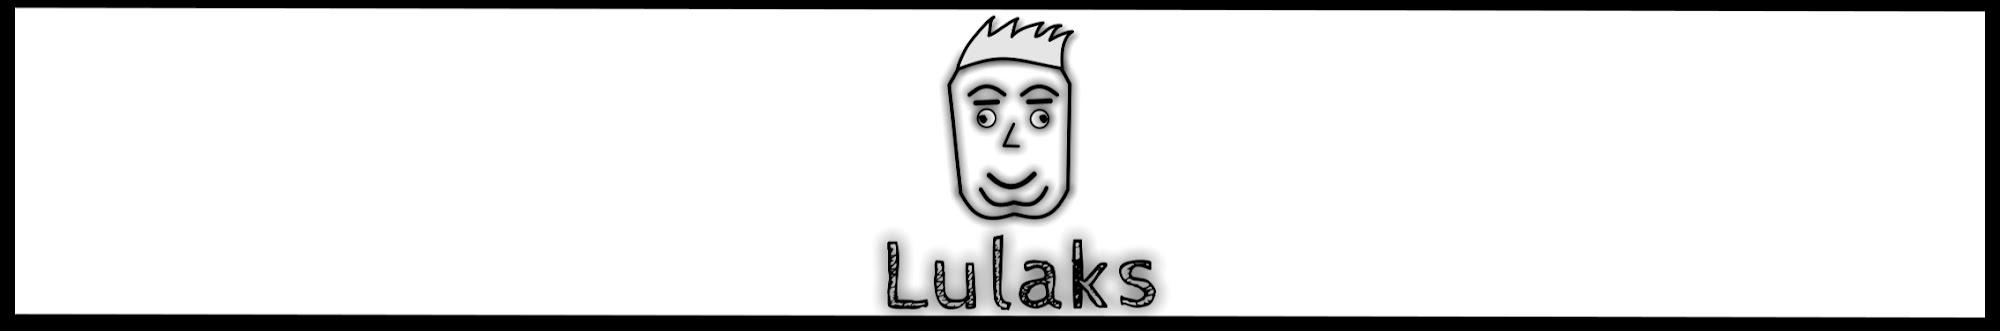 Lulaks